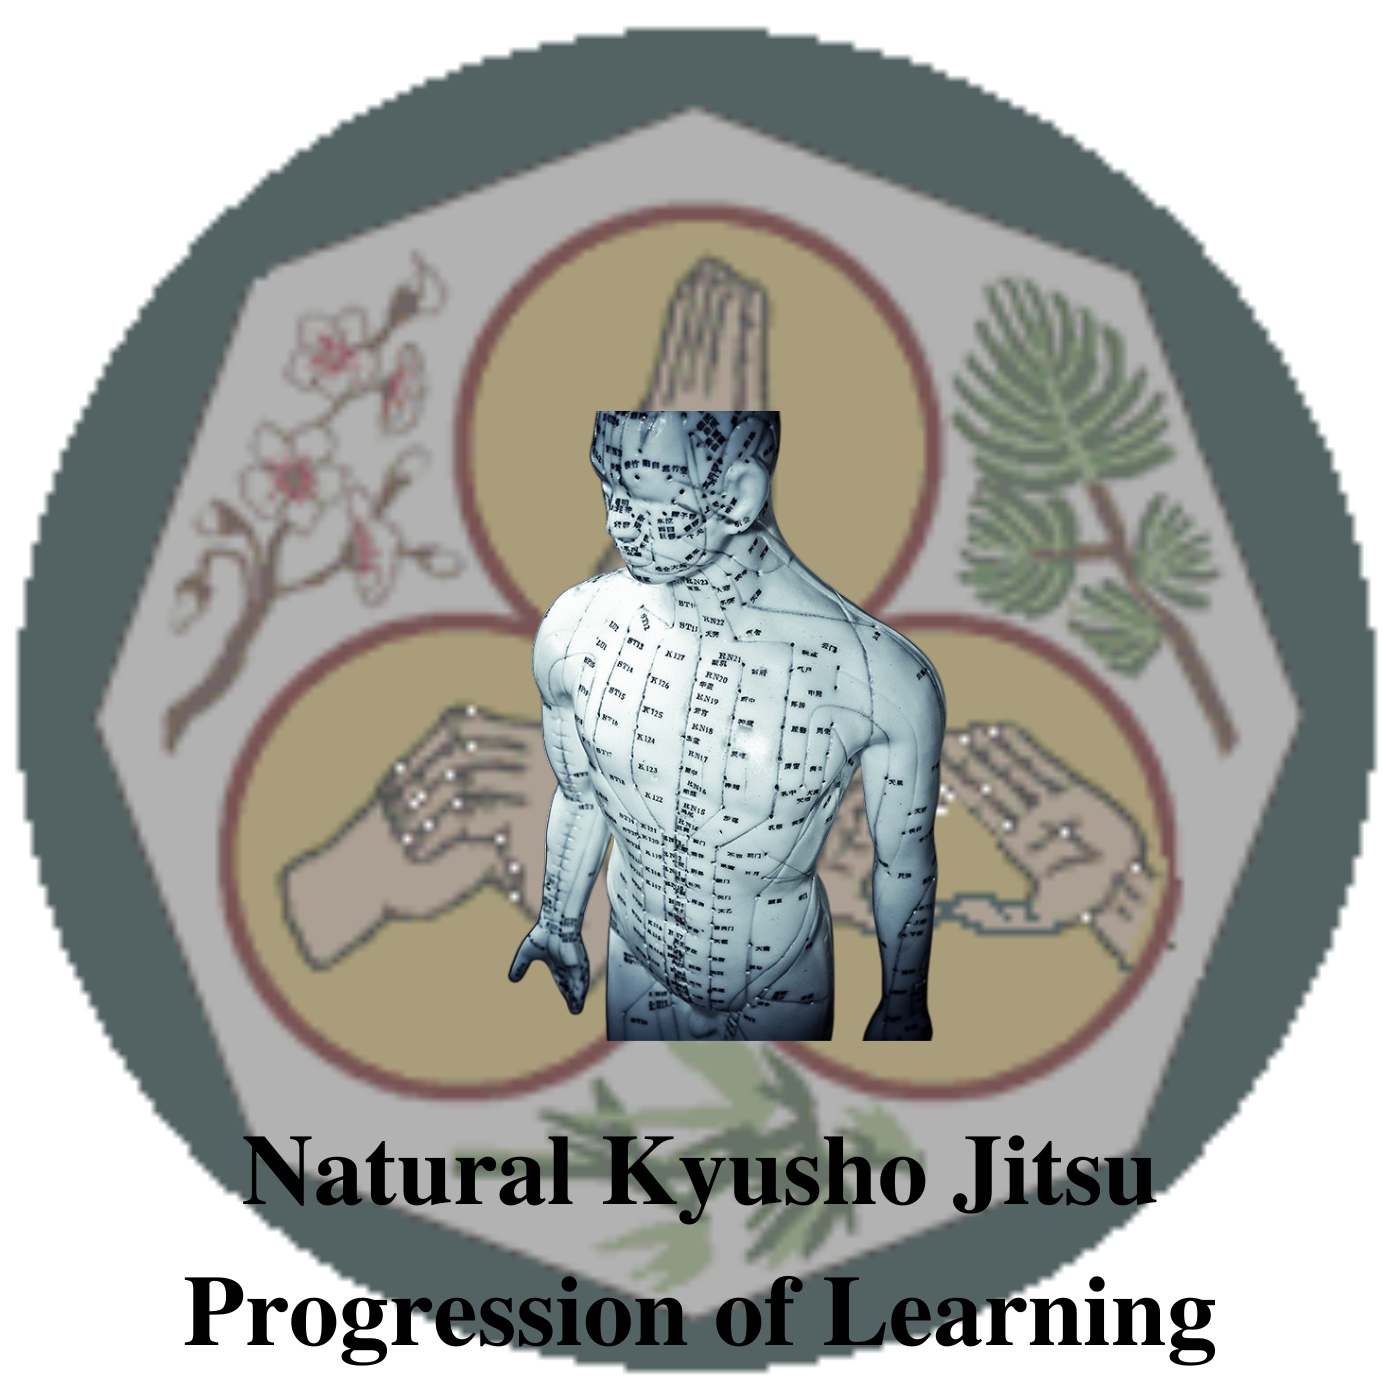 * Natural Kyusho Jitsu Progression of Learning